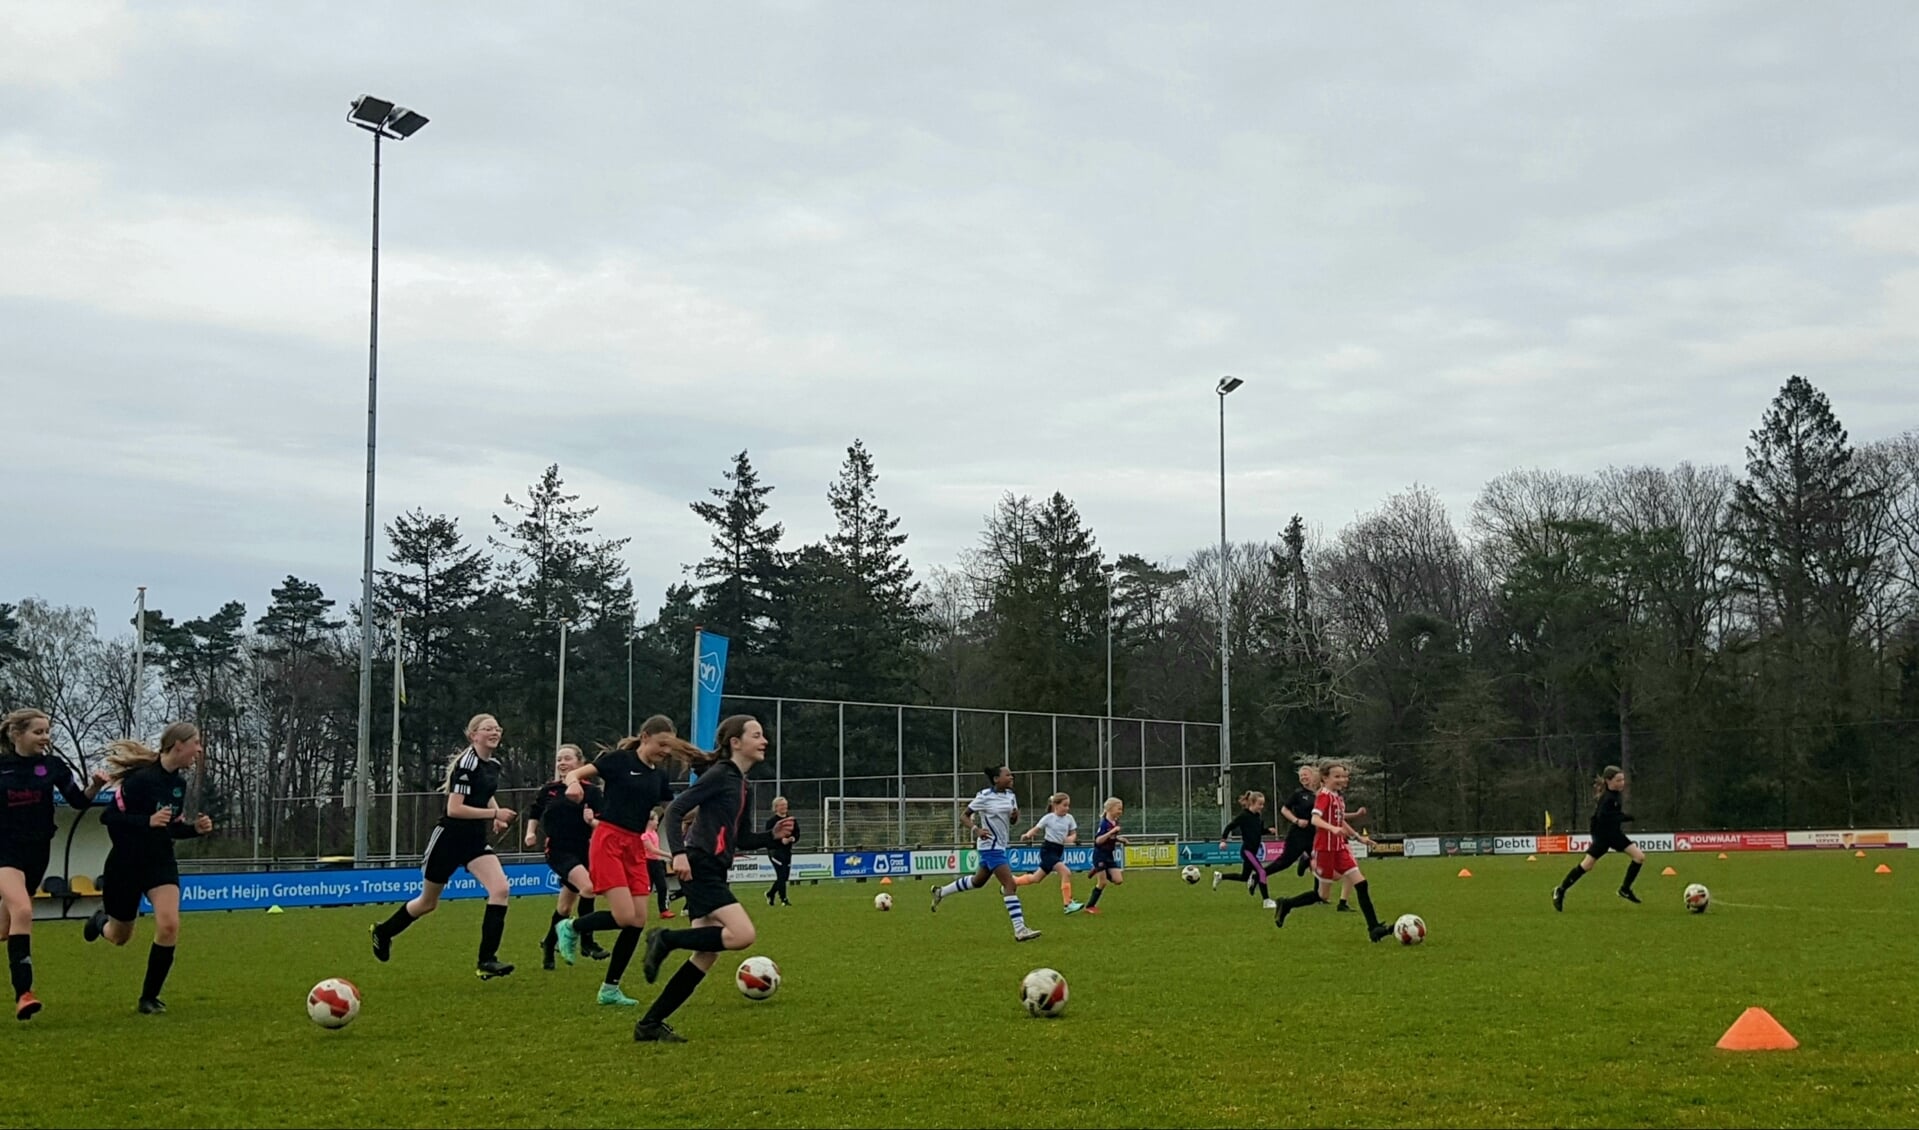 Via speciale ‘vriendinnen-trainingen’ wil VV Vorden meiden kennis laten maken met de voetbalsport en de vereniging. Foto: PR 